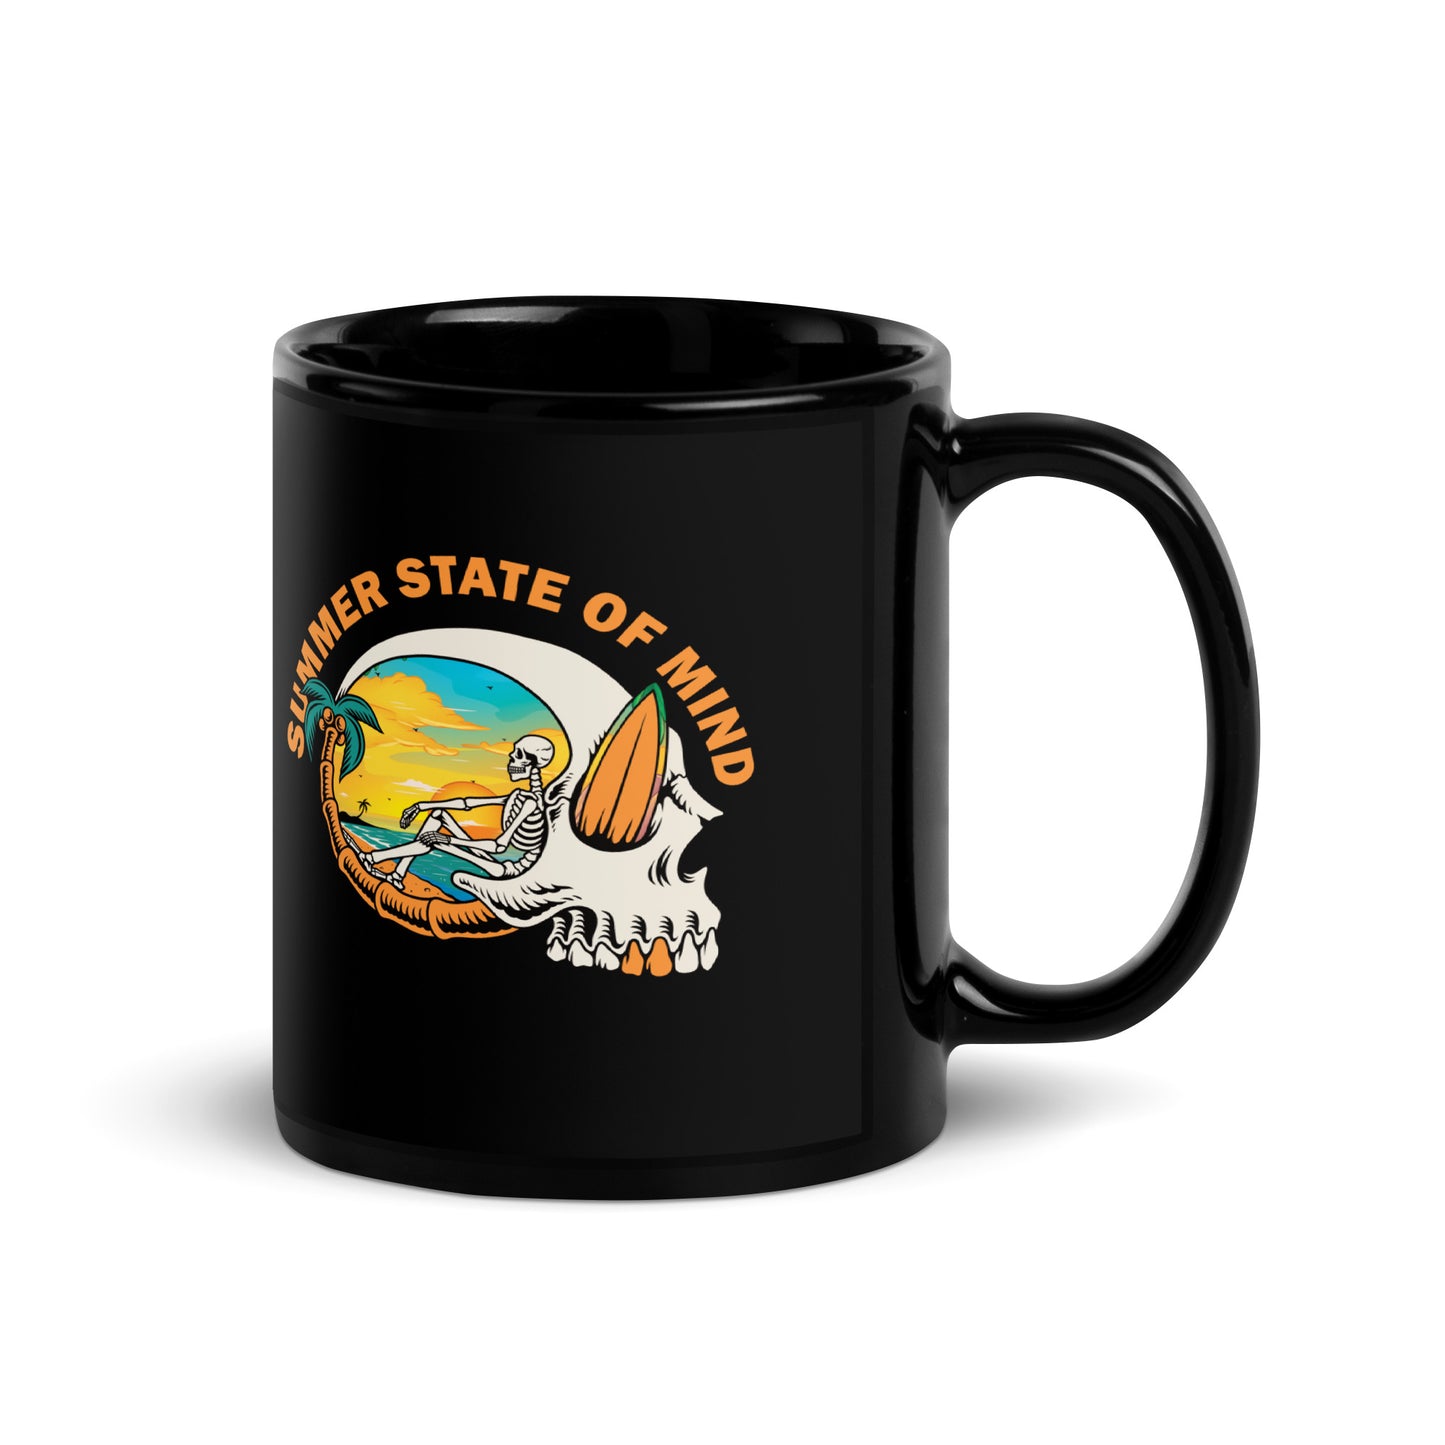 State Of Mind Coffee Mug